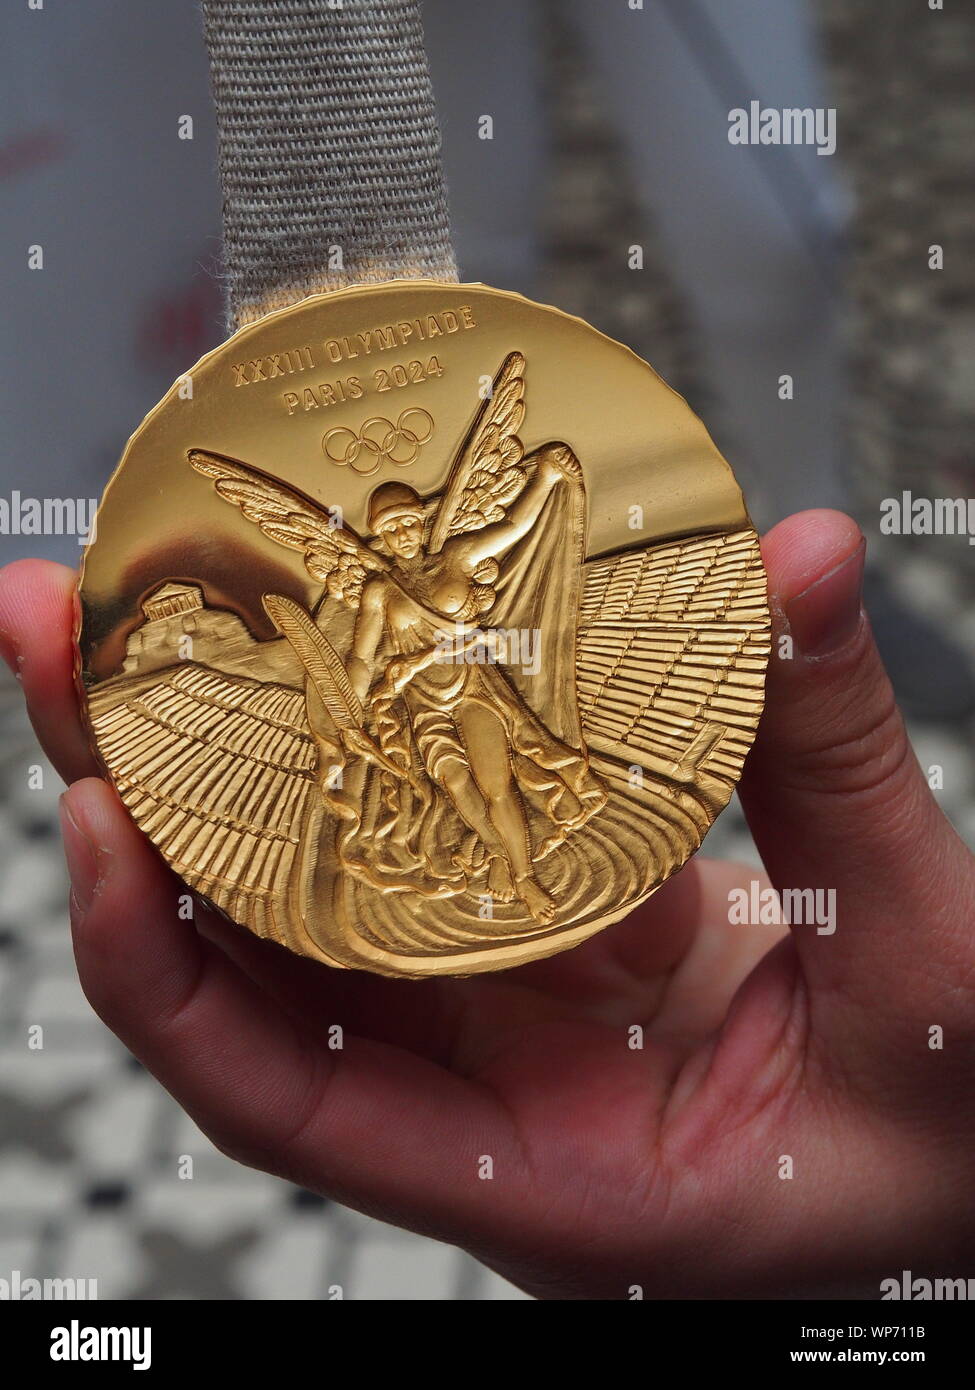 Les nouveaux pictogrammes des Jeux Olympiques de Paris 2024 n'auront pas la  médaille d'or